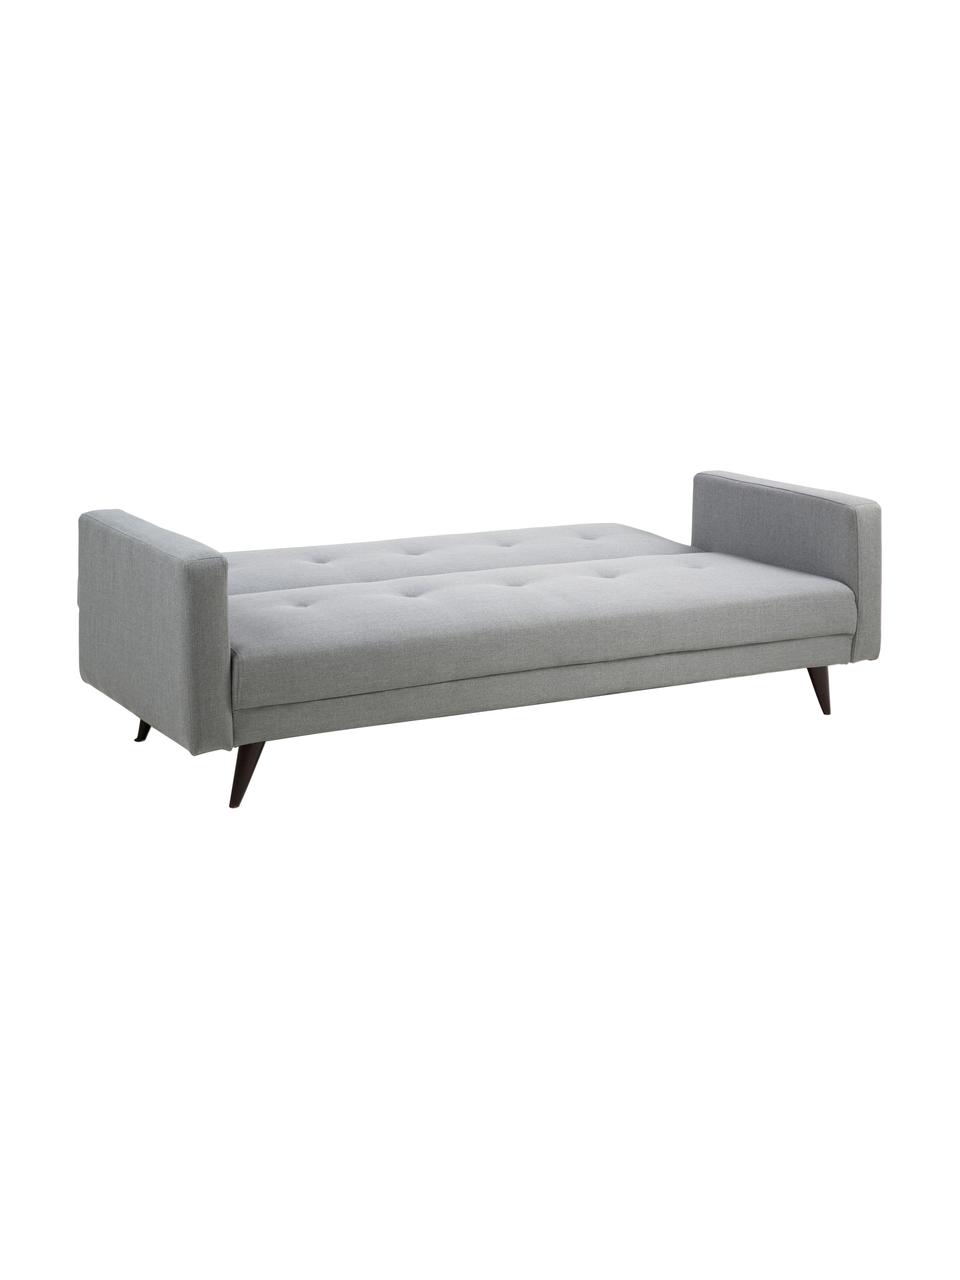 Sofa rozkładana Leconi (3-osobowa), Tapicerka: poliester, Nogi: drewno kauczukowe, lakier, Jasny szary, S 217 x G 89 cm